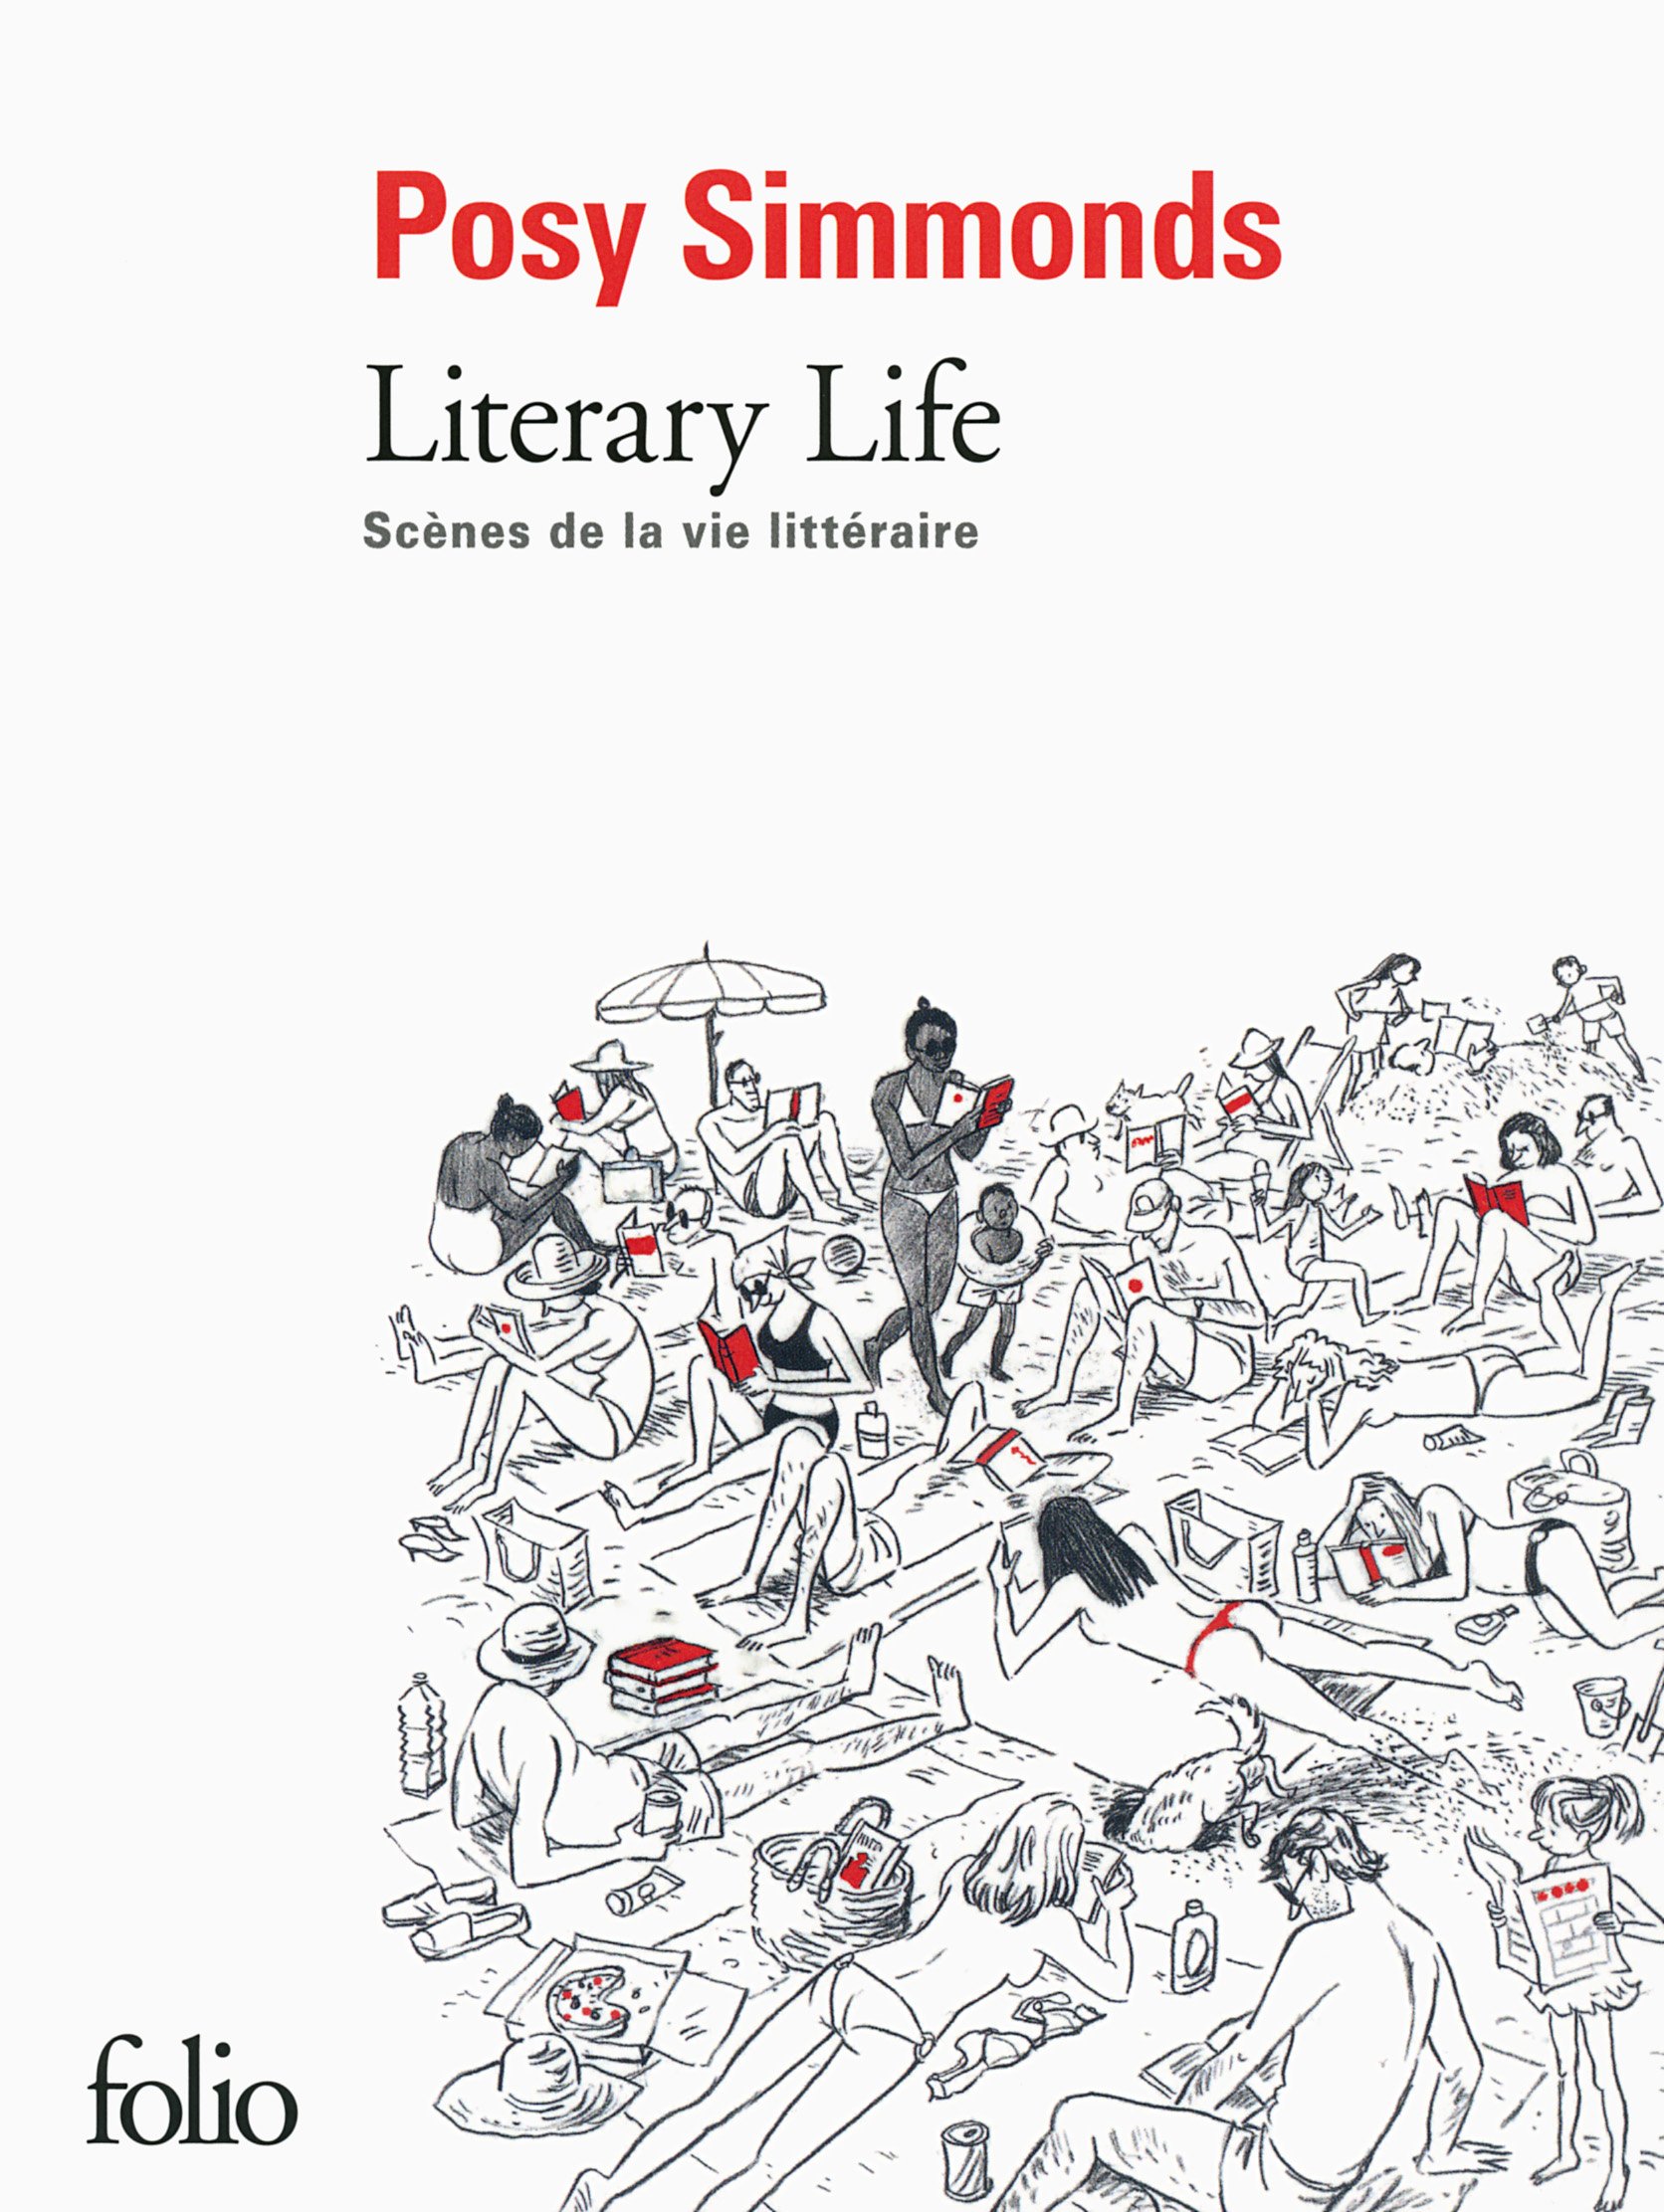 Literary life: Scenes de la vie litteraire | Posy Simmonds image0